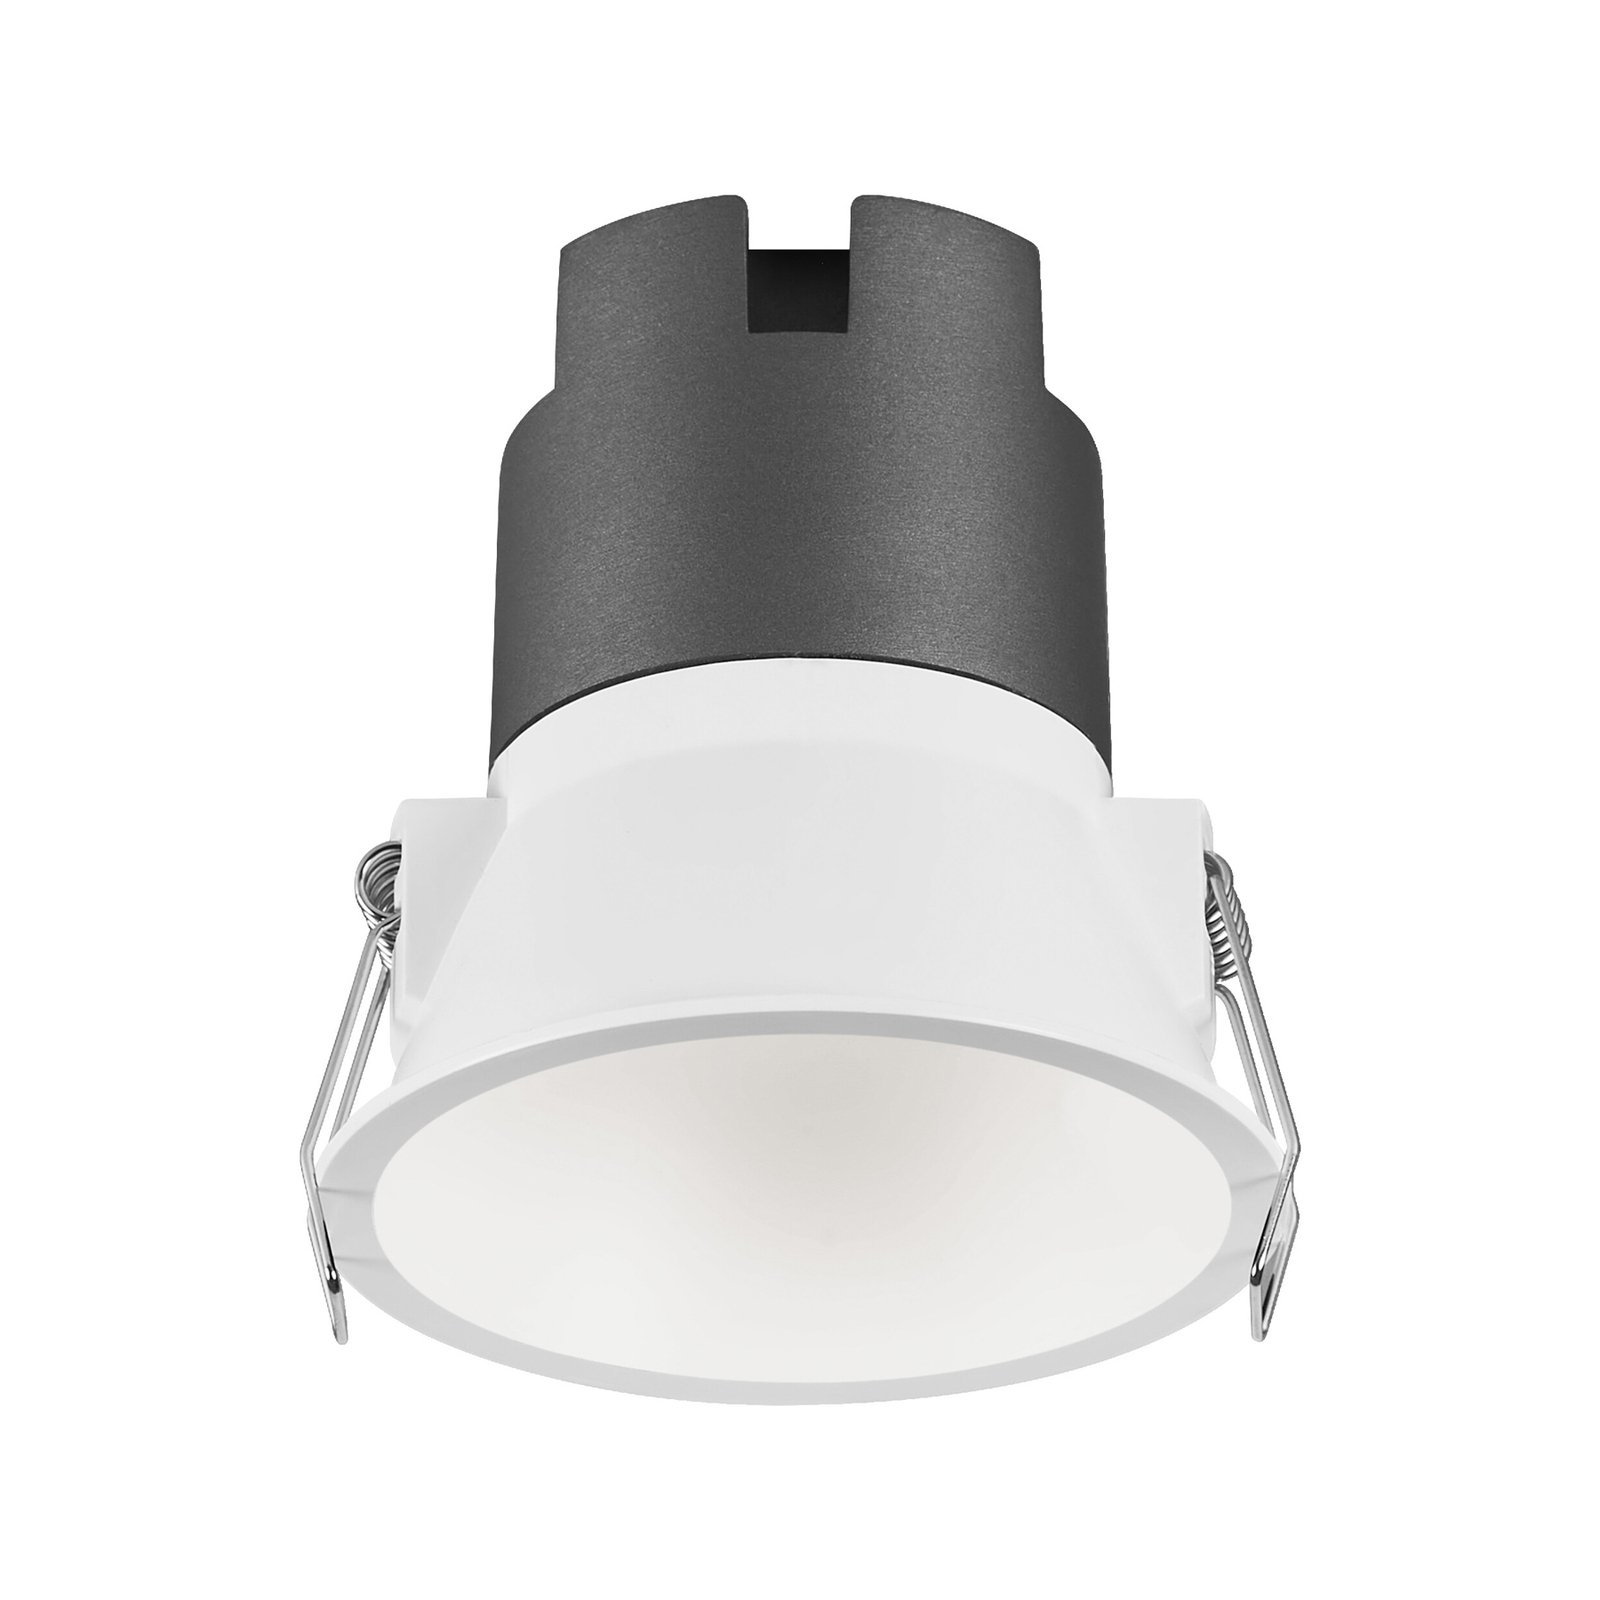 LEDVANCE Twist LED spot Ø9.3cm 830 white/white